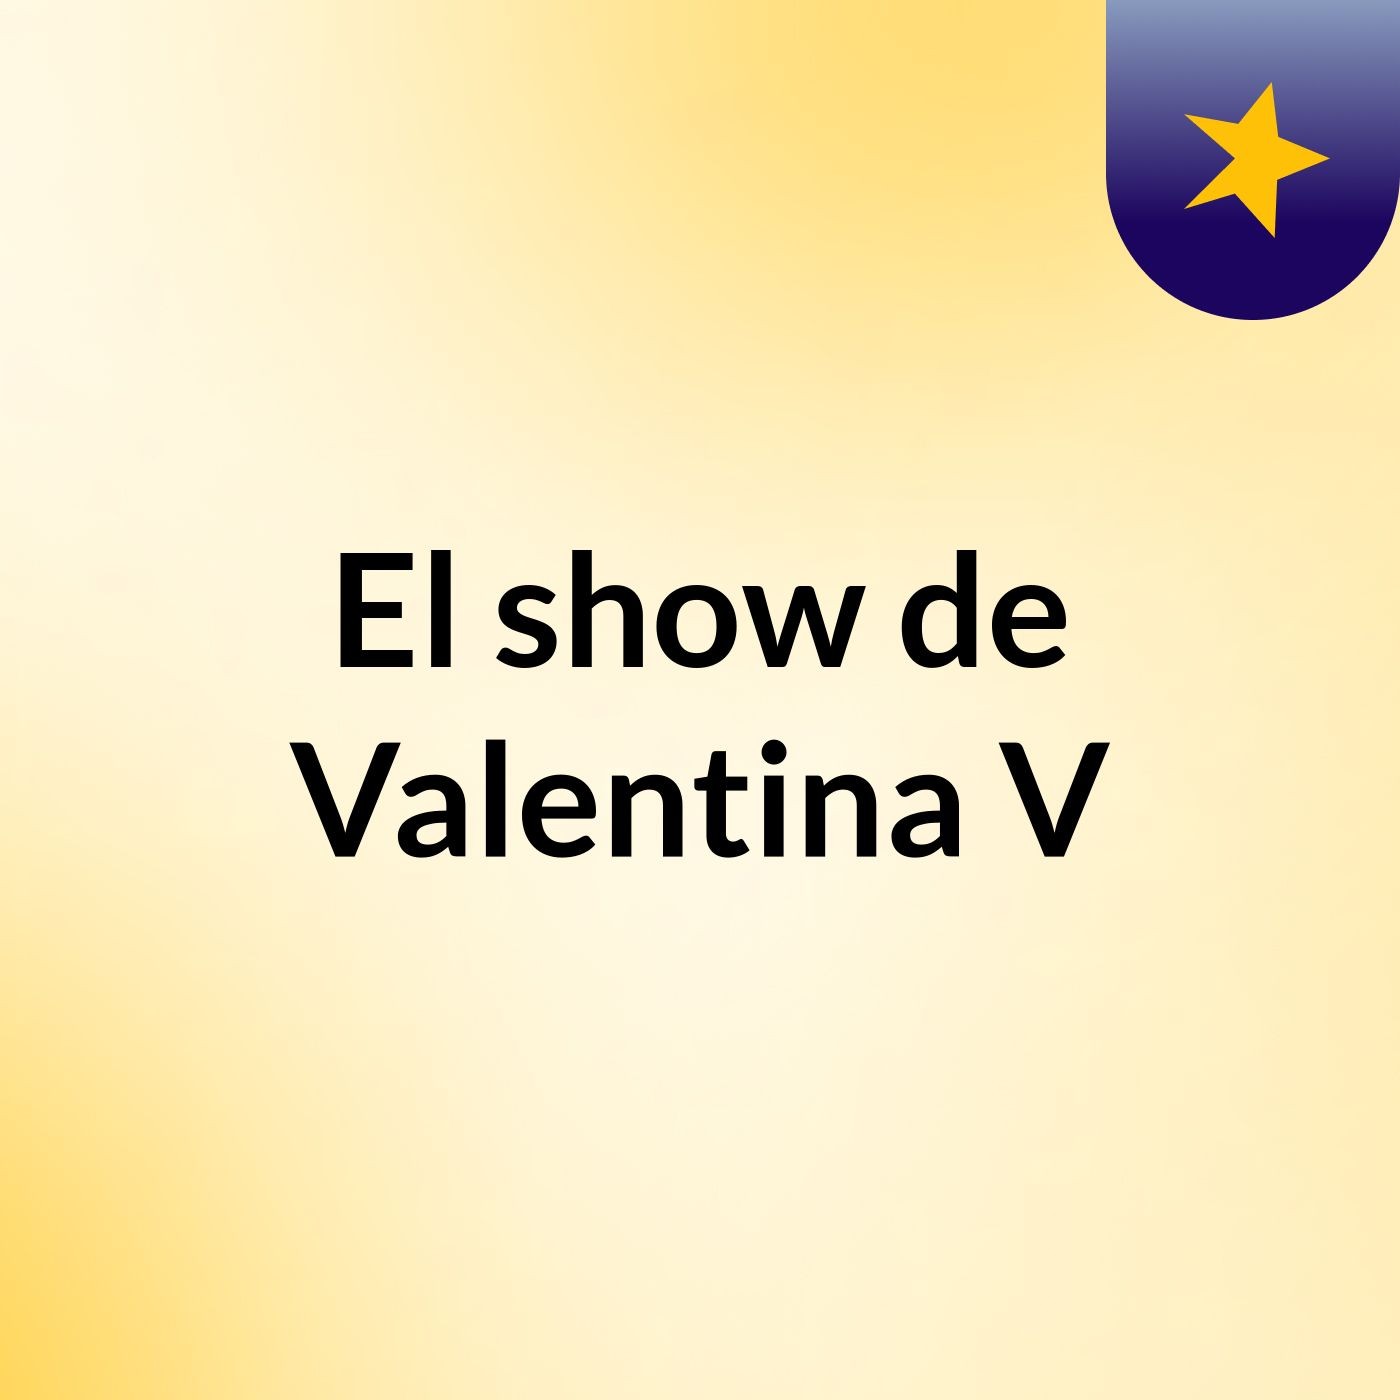 El show de Valentina V